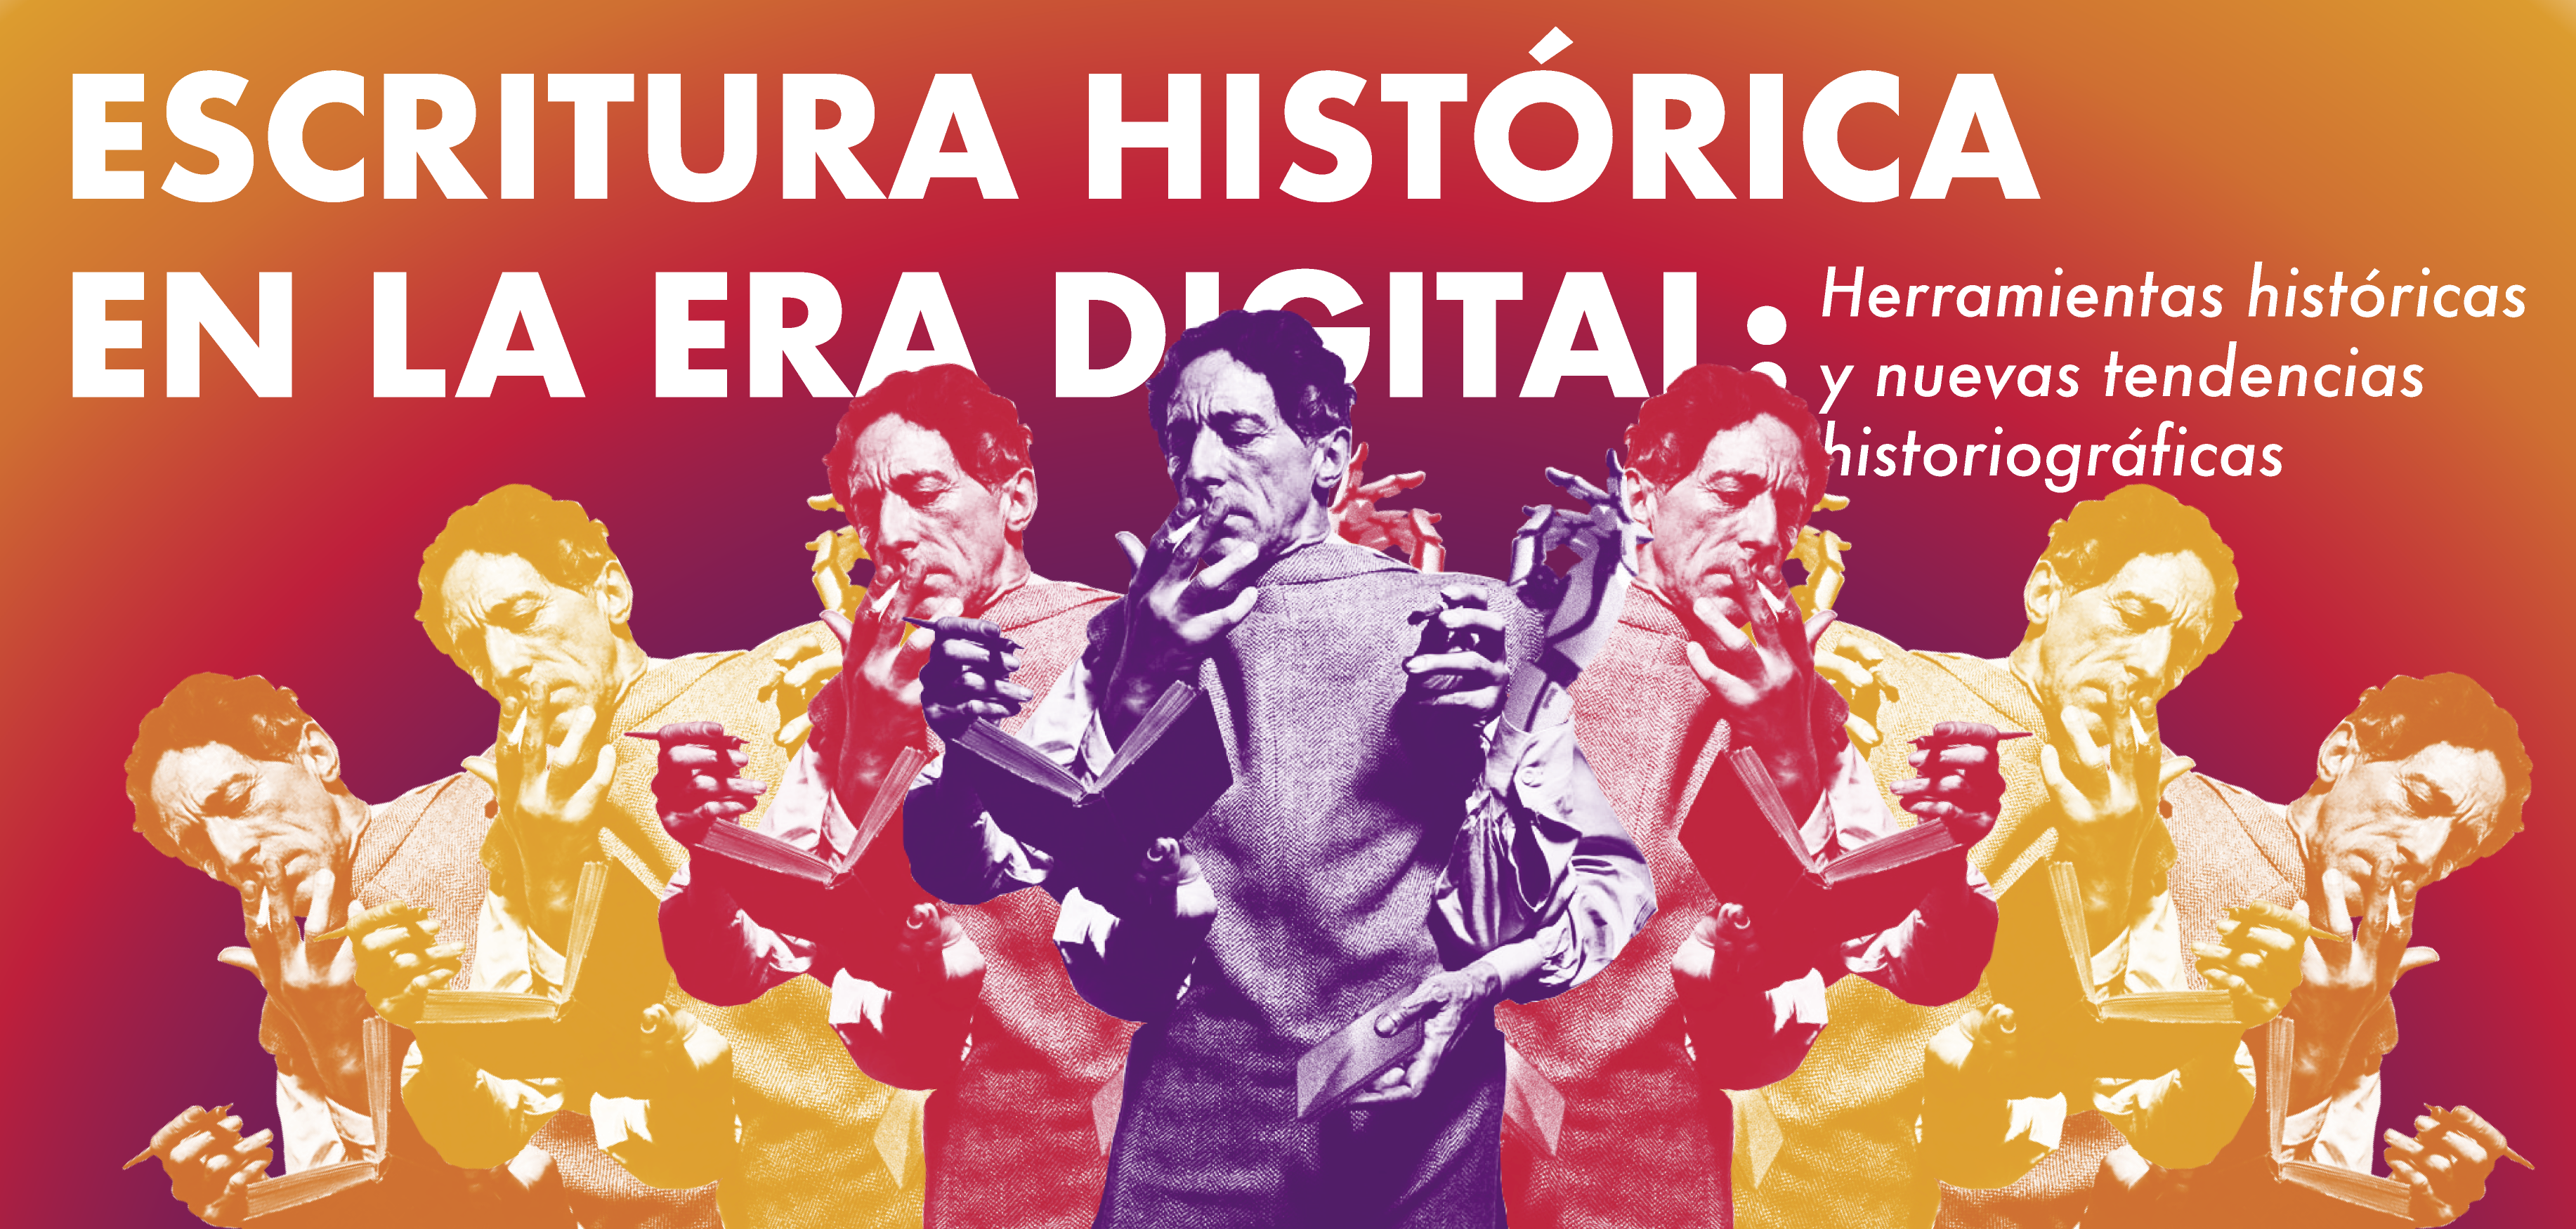 Escritura histórica en la era digital: herramientas históricas y nuevas tendencias historiográficas